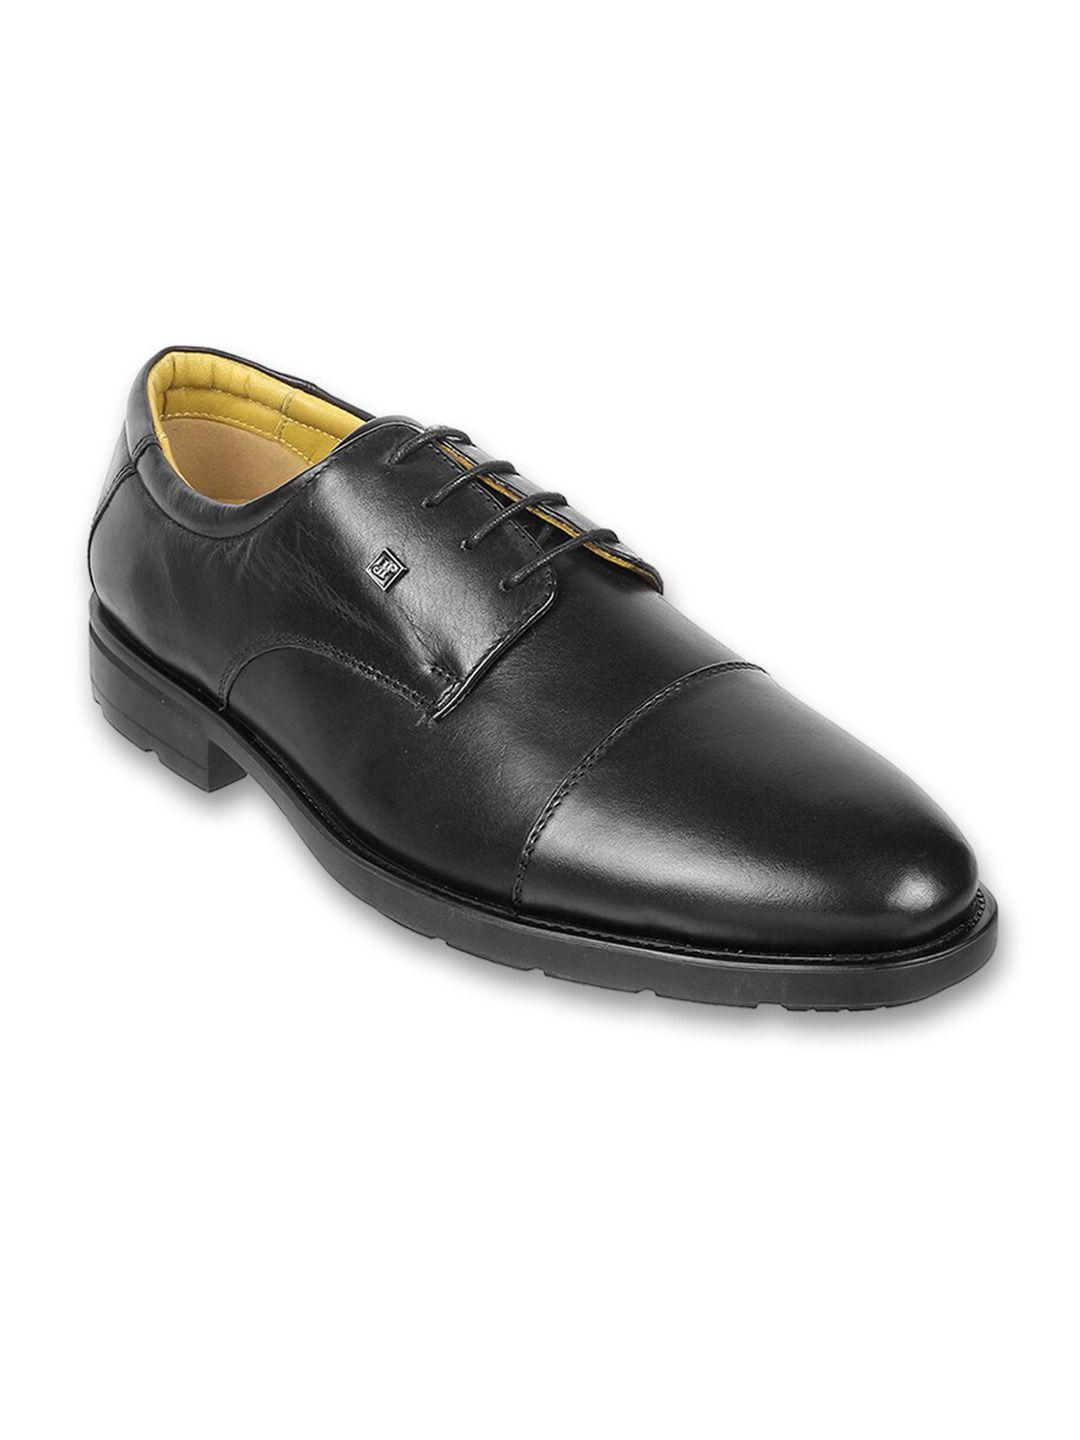 j.fontini men round toe leather formal derbys